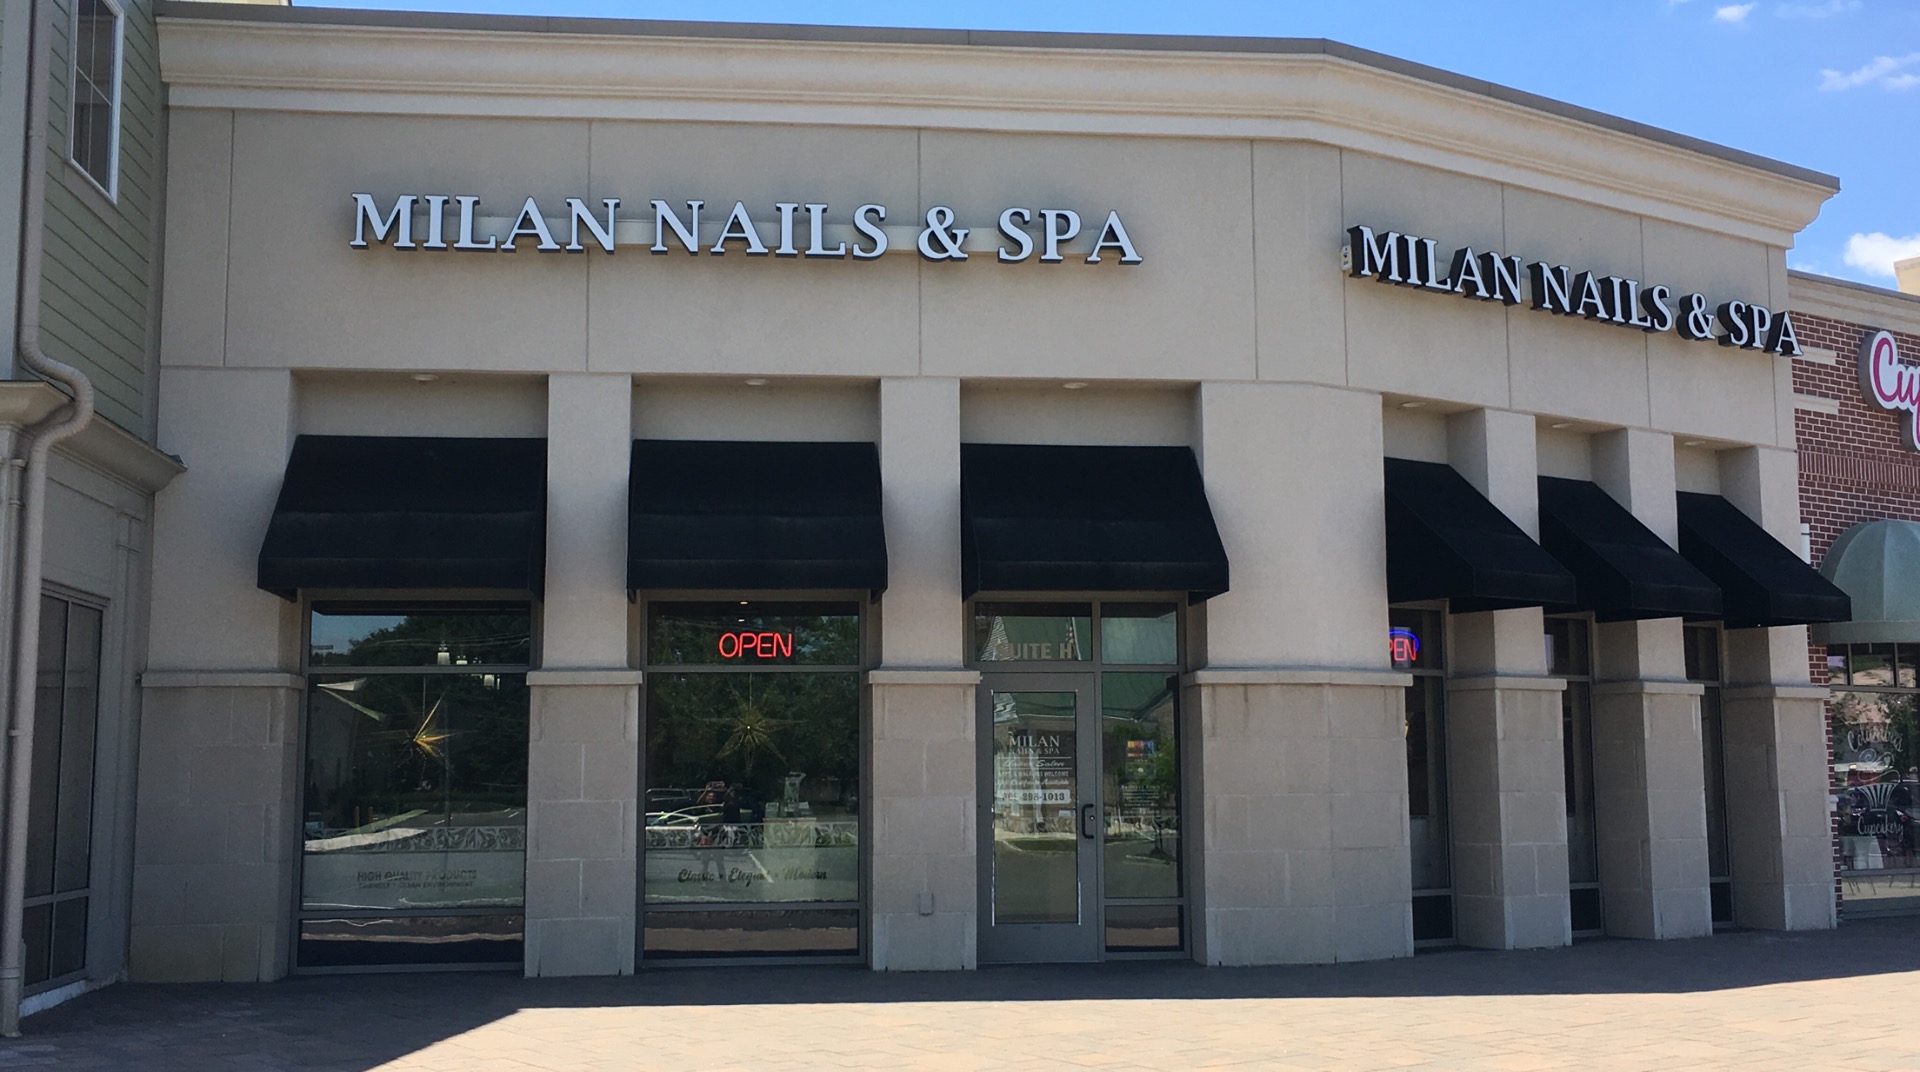 Milan Nails and spa